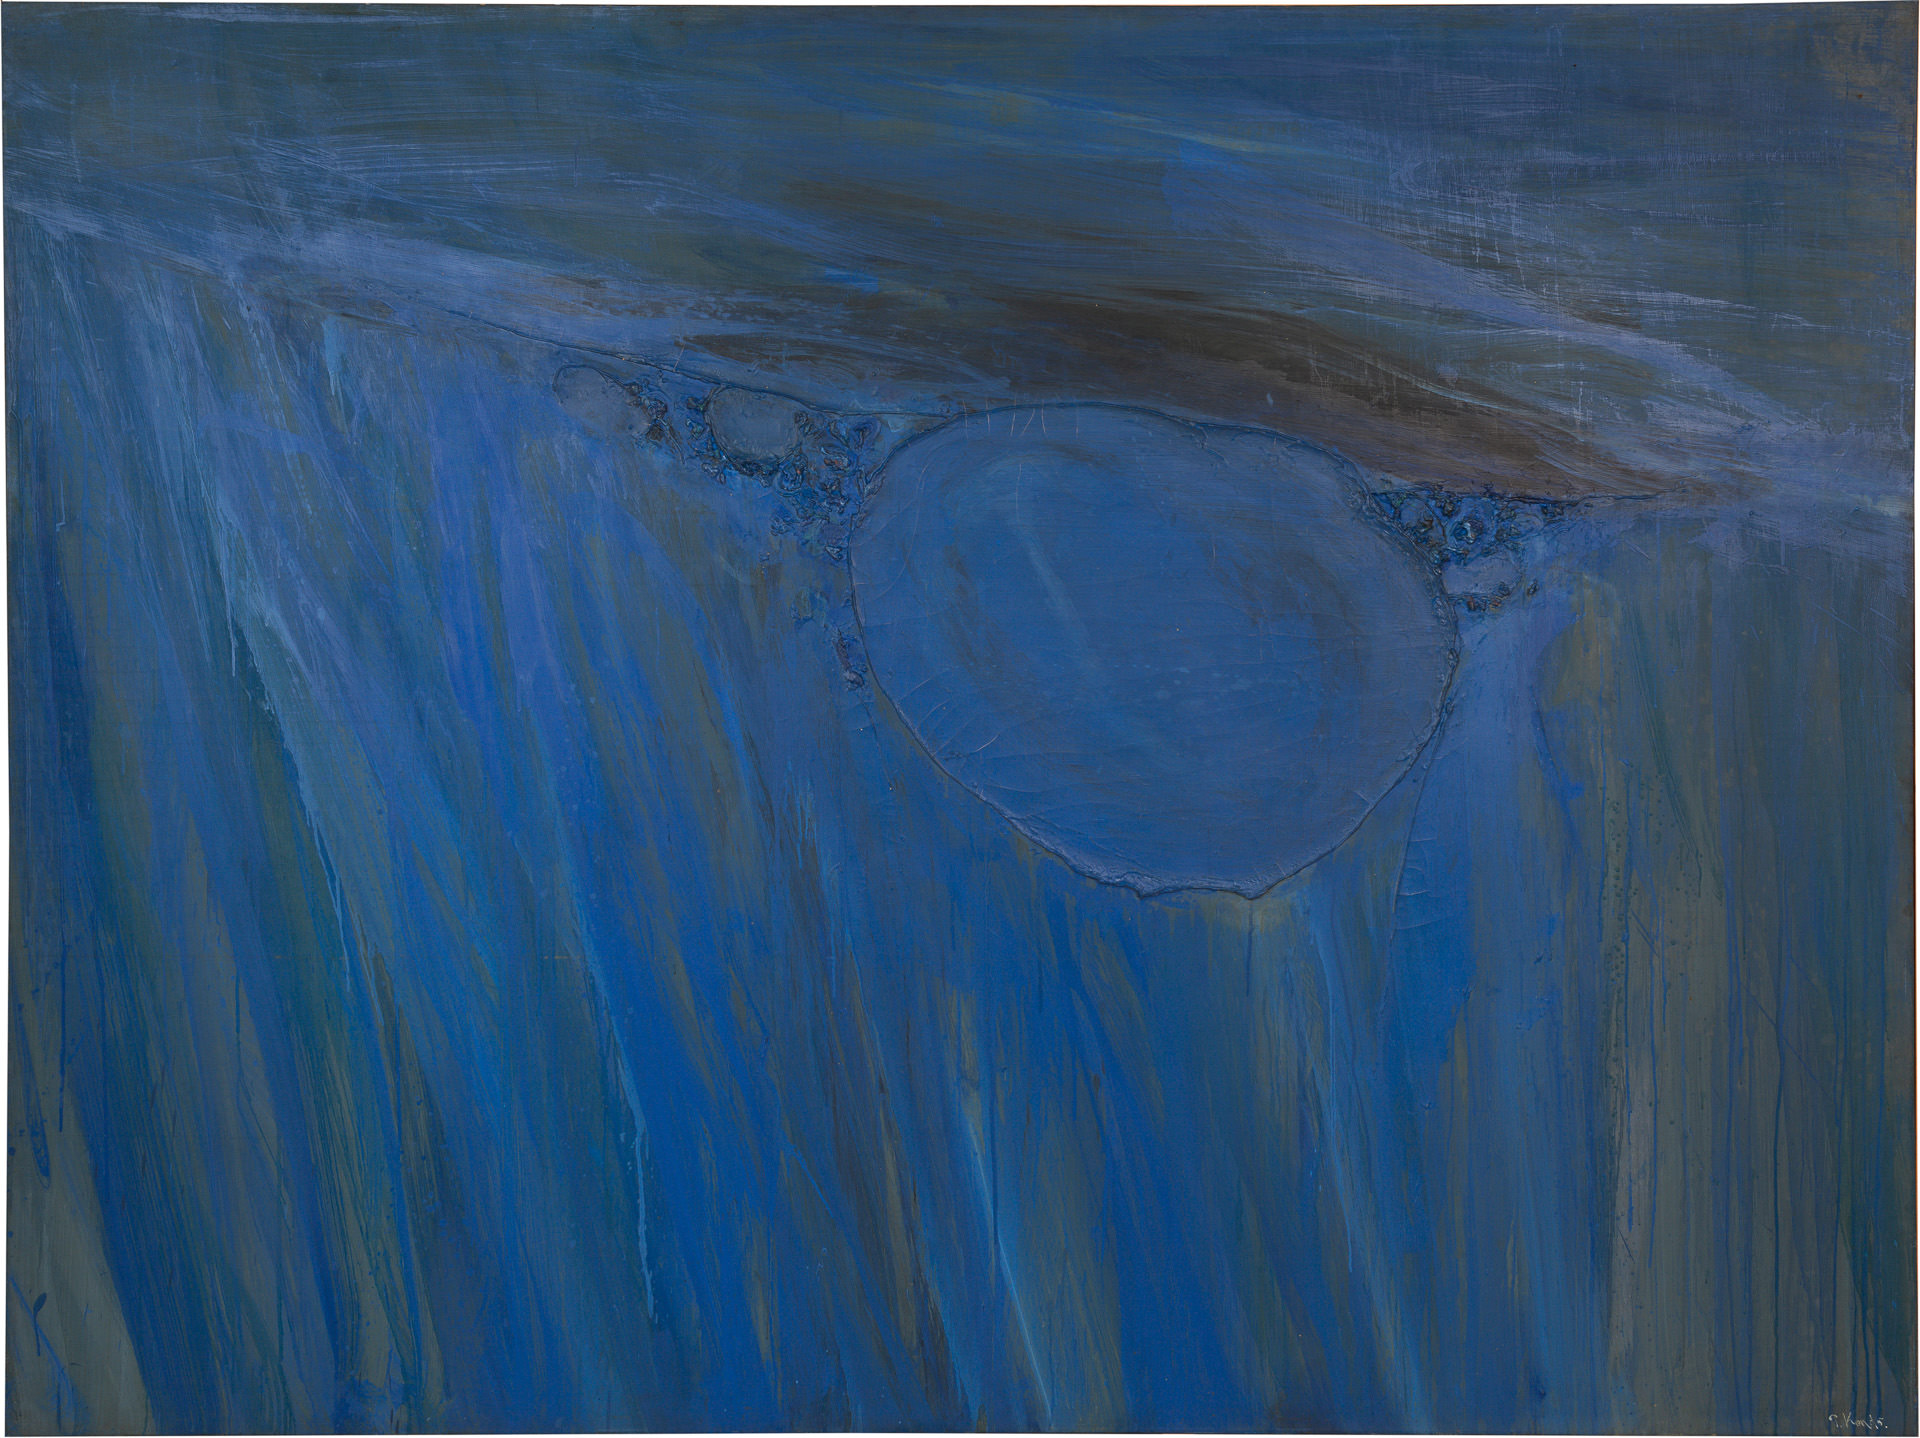 近藤竜男〈Blue Image〉, 油彩・カンヴァス, 183.7×243.7, 日本橋画廊（ニューヨーク）個展, 1961